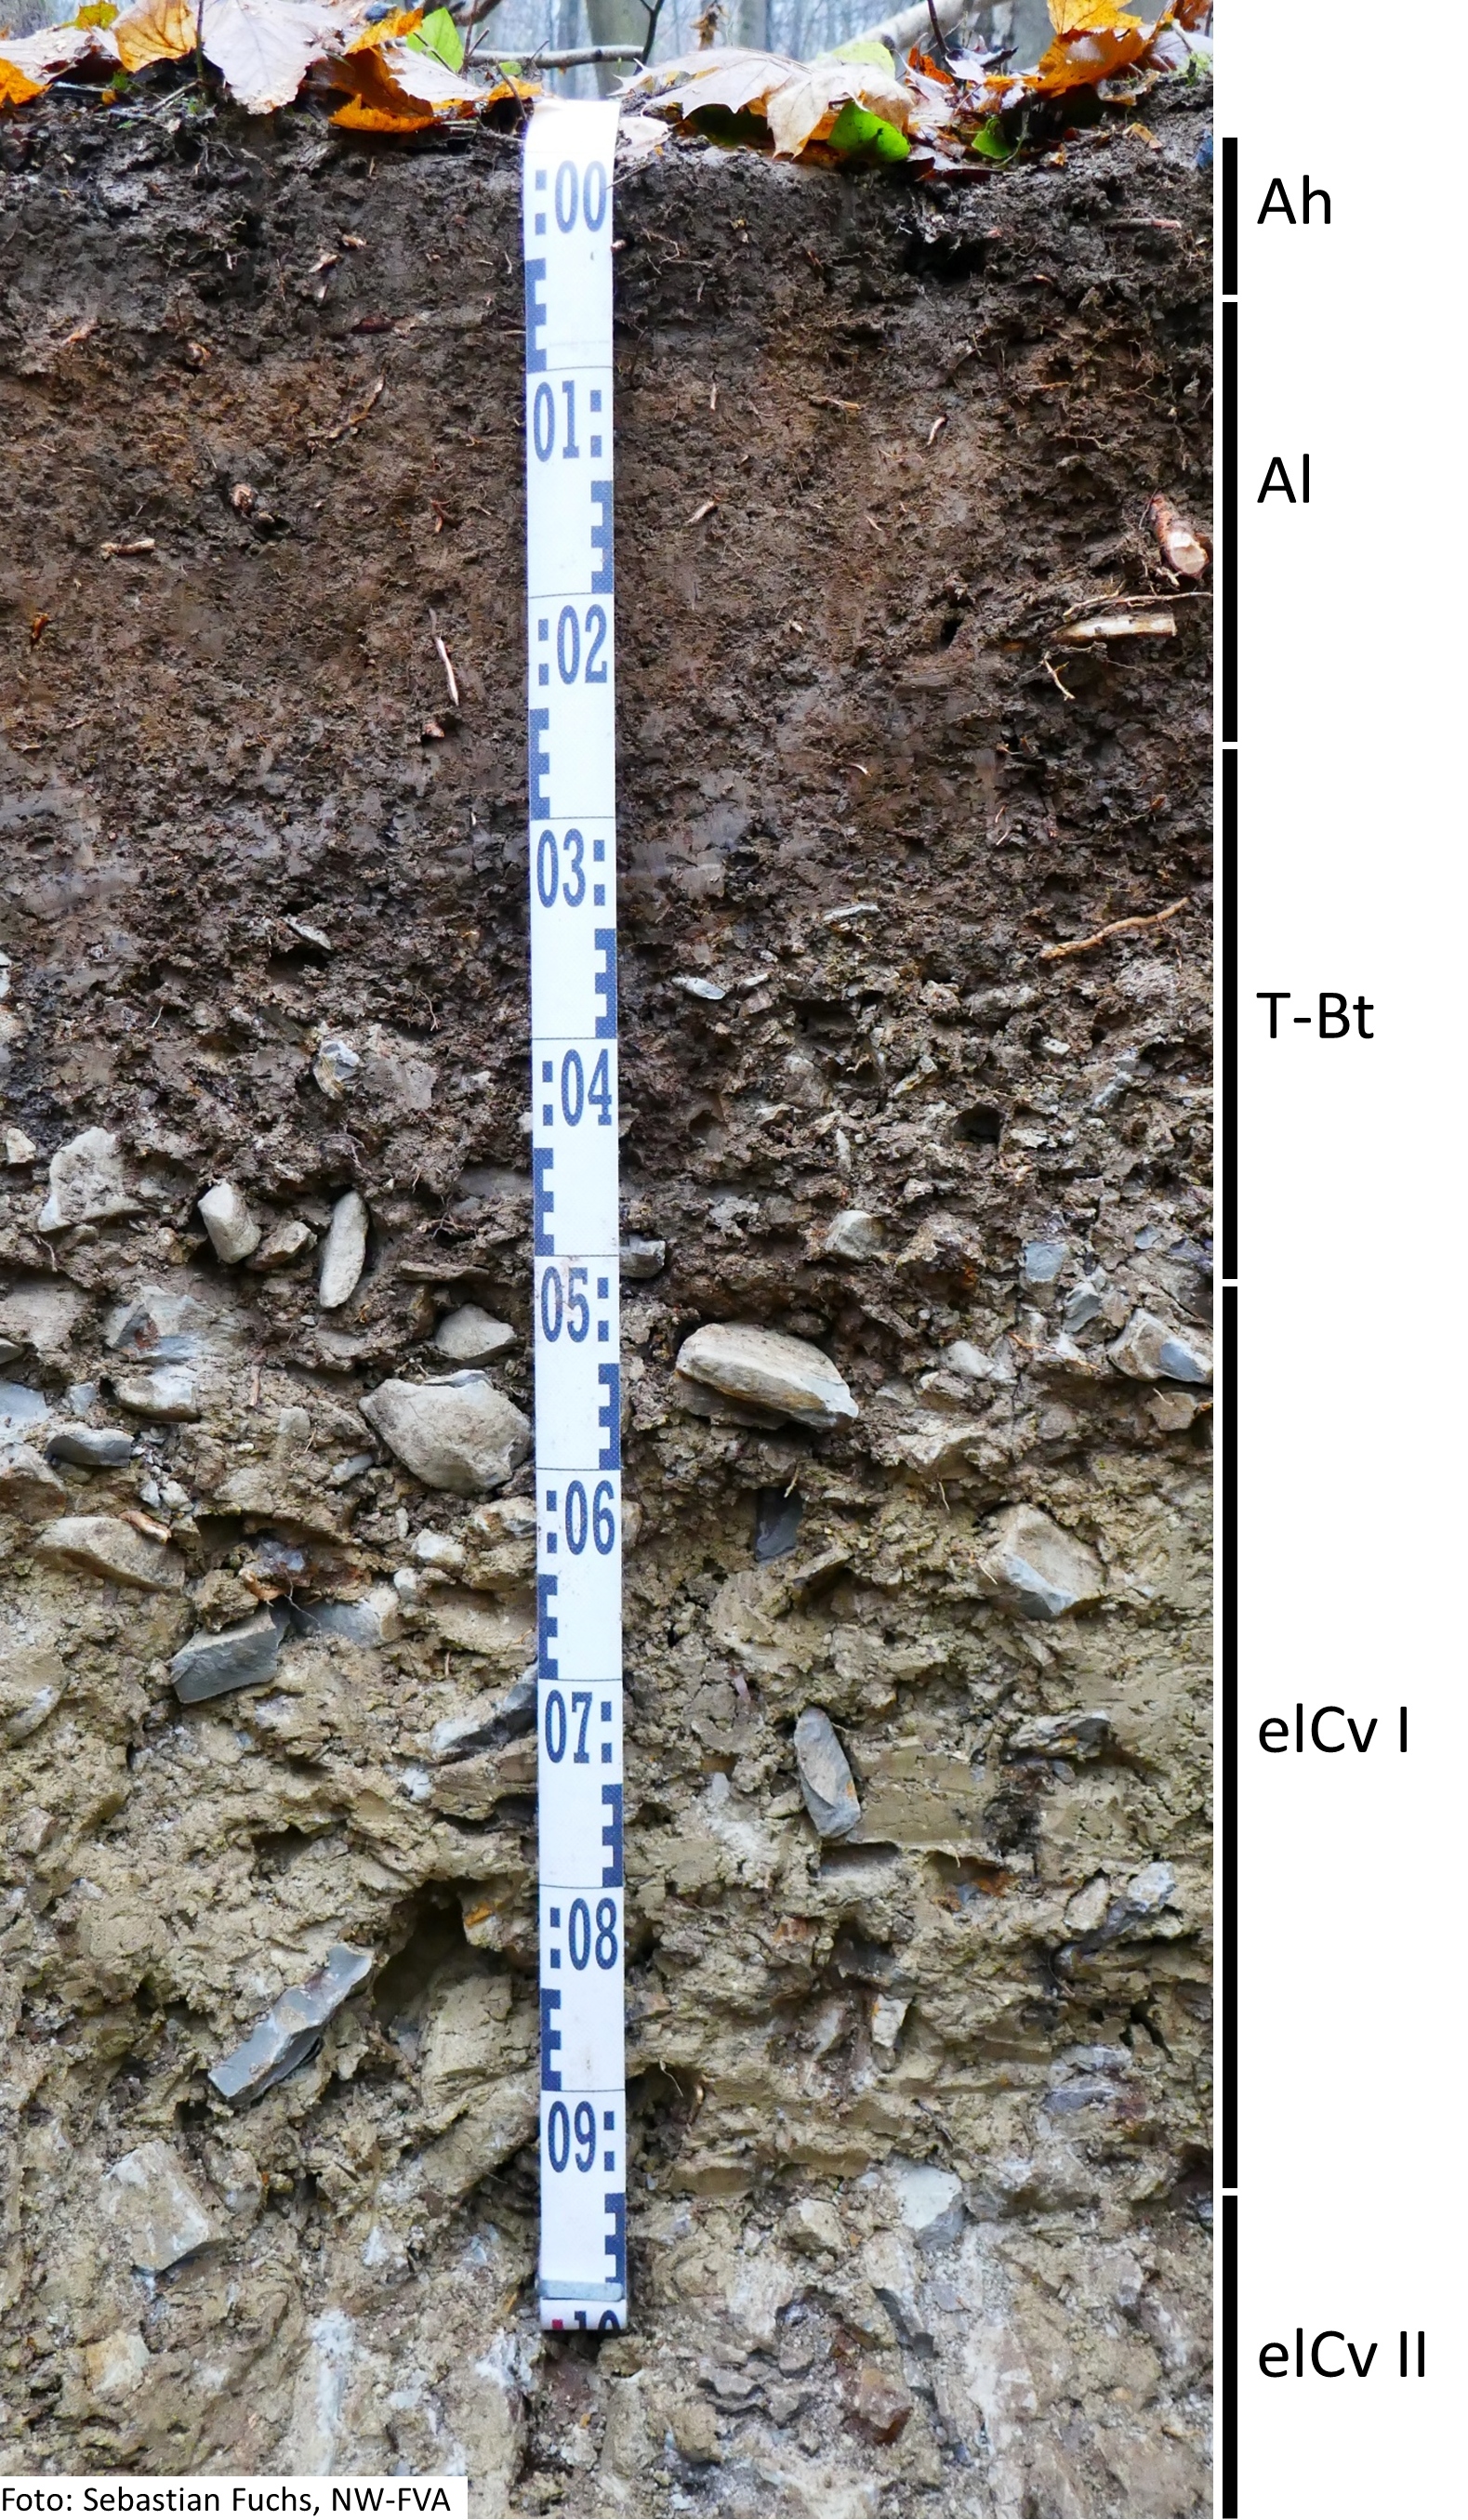 Das Foto zeigt einen senkrechten Schnitt durch den Boden der Untersuchungsfläche. Das Bodenprofil enthält folgende Bodenhorizonte: Ah, Al, T-Bt, elCv I, elCv II